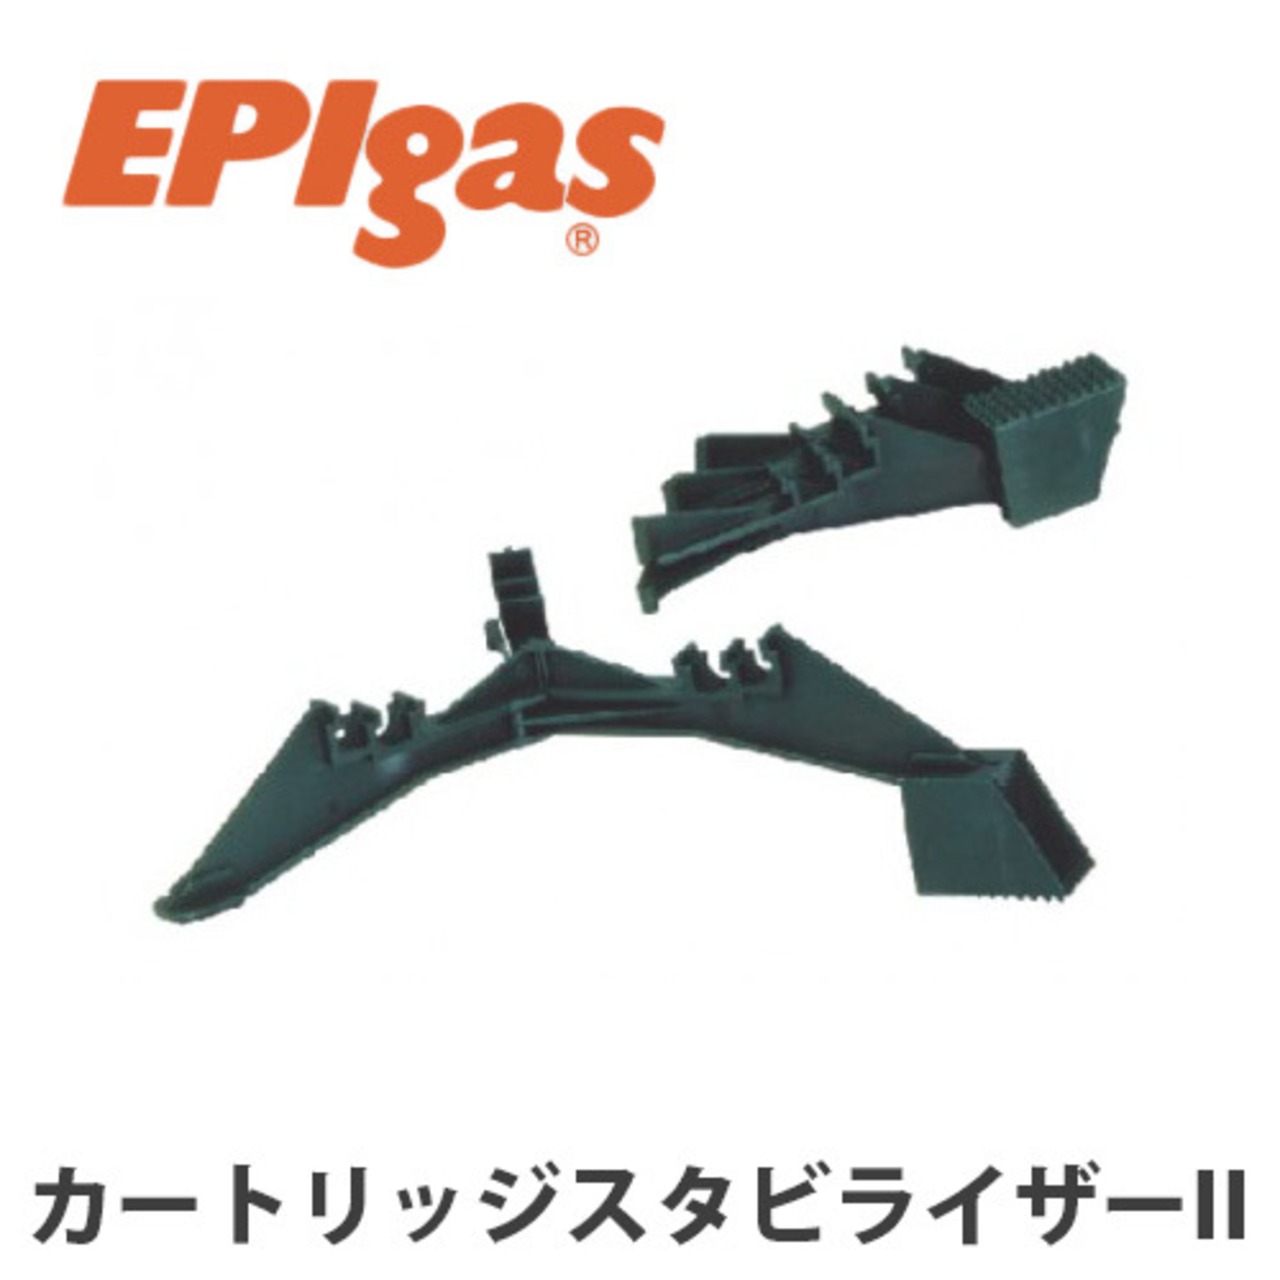 EPIgas(イーピーアイ ガス) カートリッジスタビライザー II 不安定な地面でも ストーブ 安定 アウトドア キャンプ グッズ サバイバル A-6603